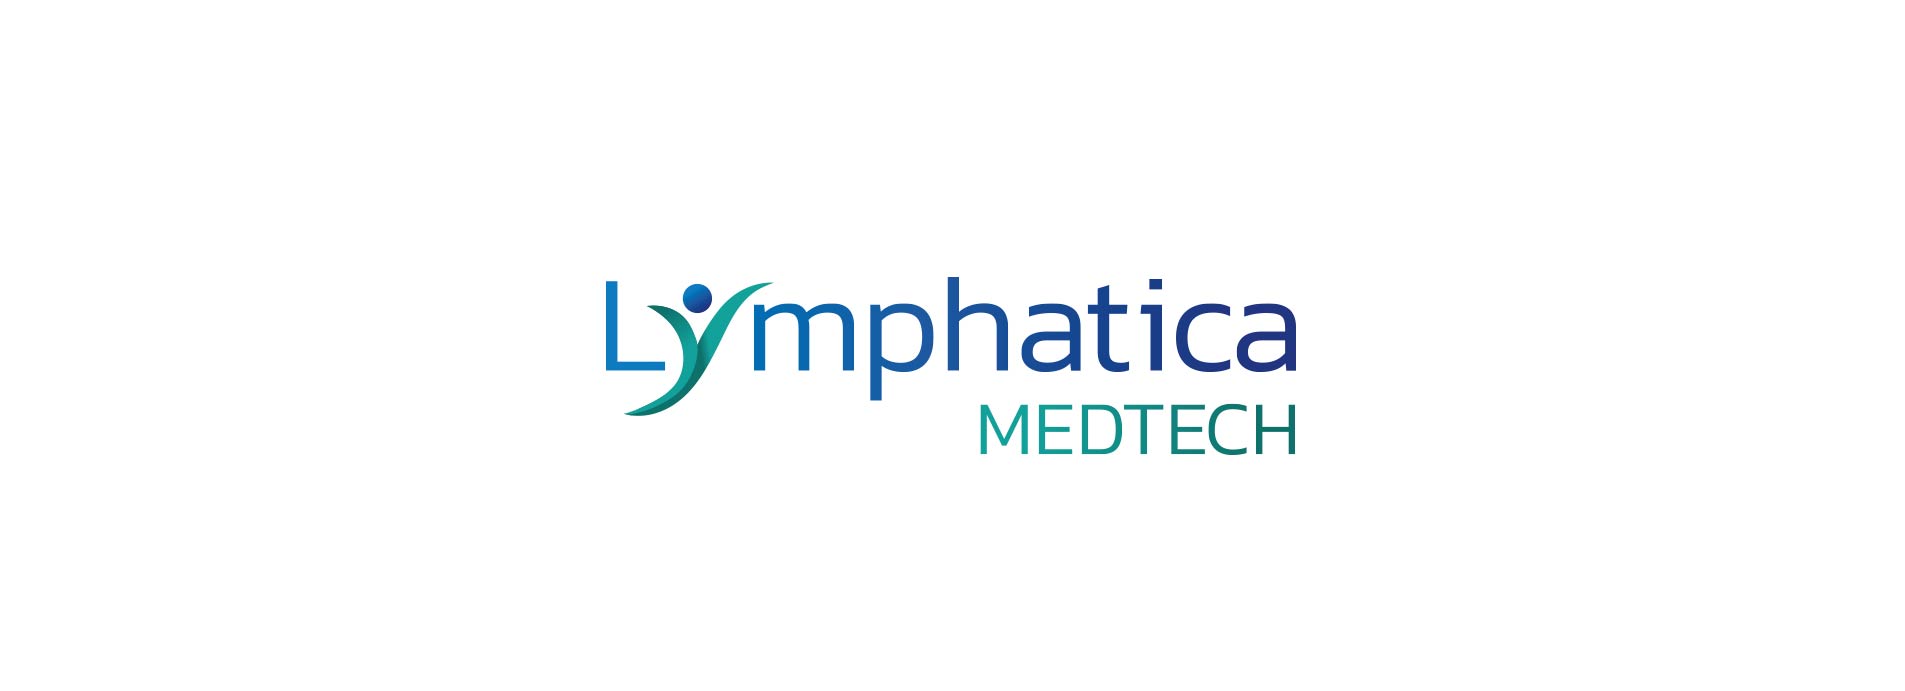 medtech company logo restyling alternative logo